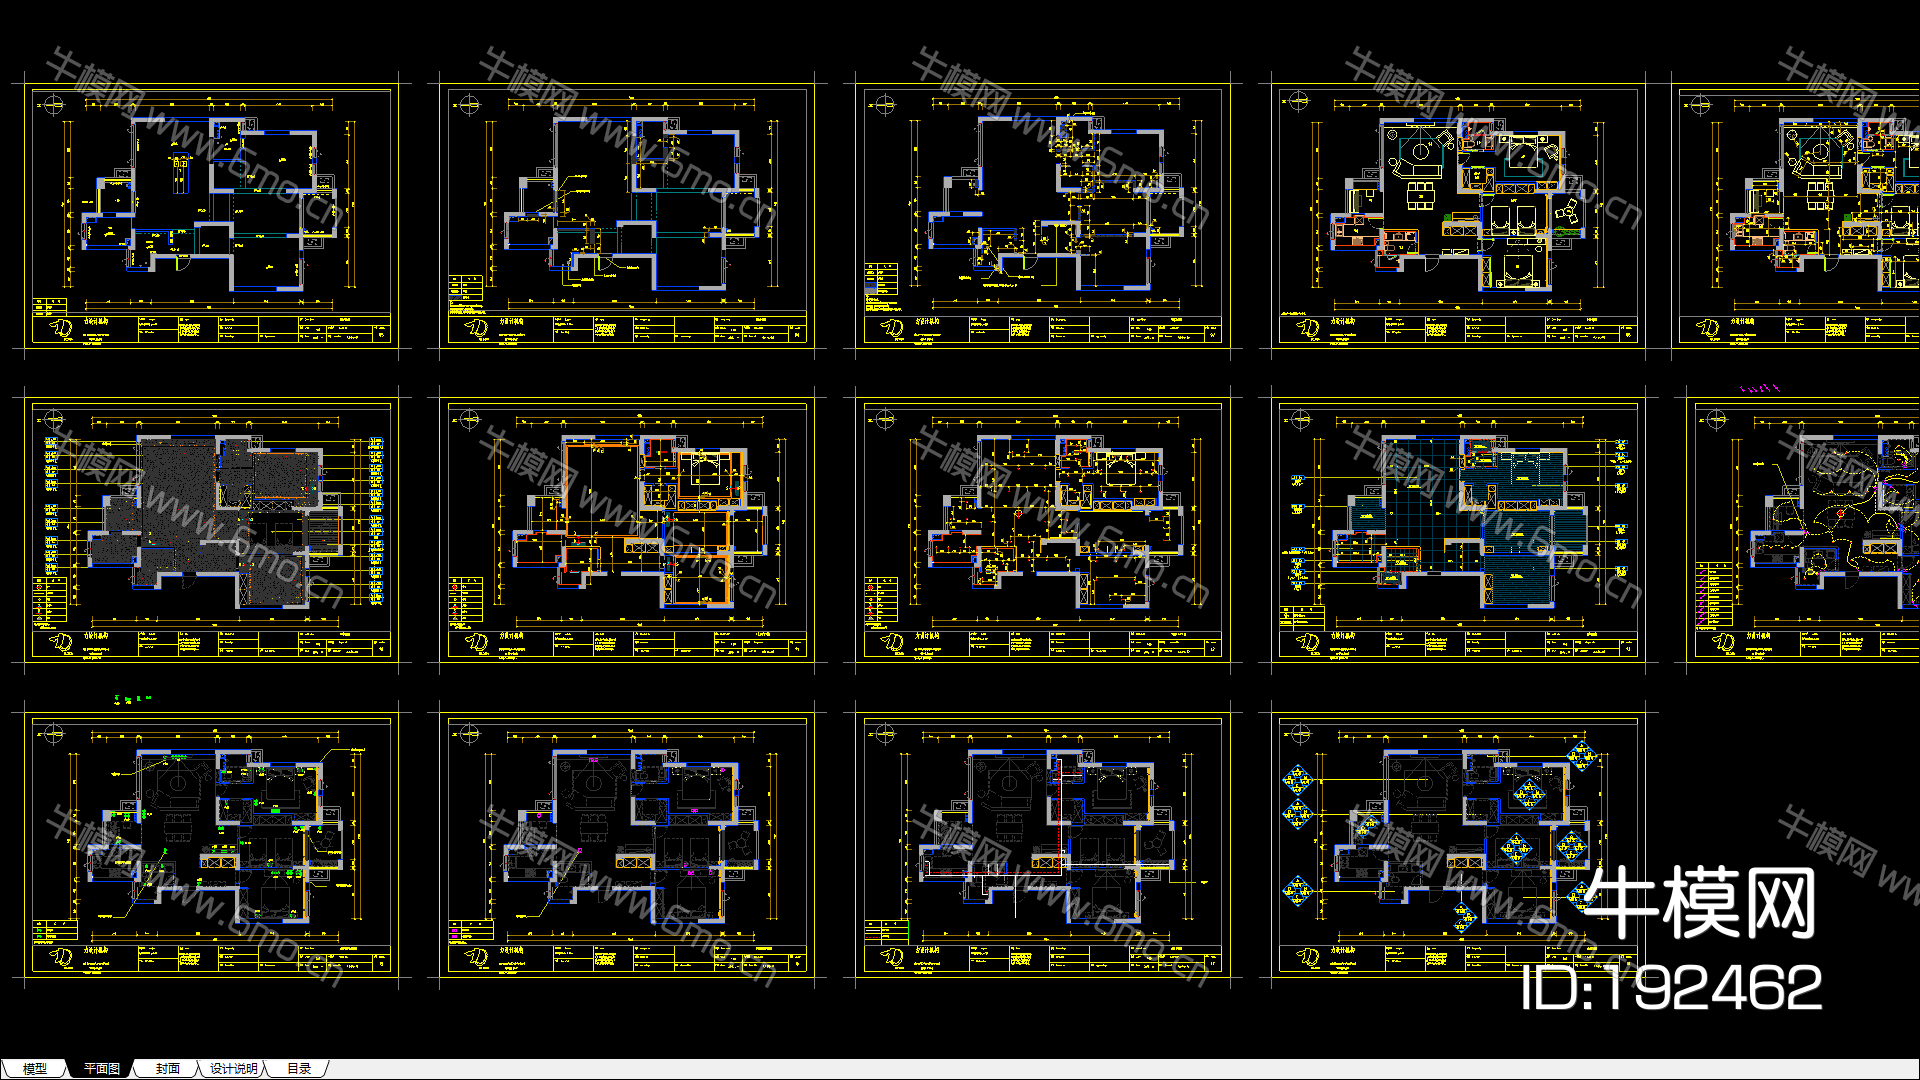 力设计-白金海岸极简样板房丨实景照片+CAD施工图（缺节点）丨55M丨2015.11